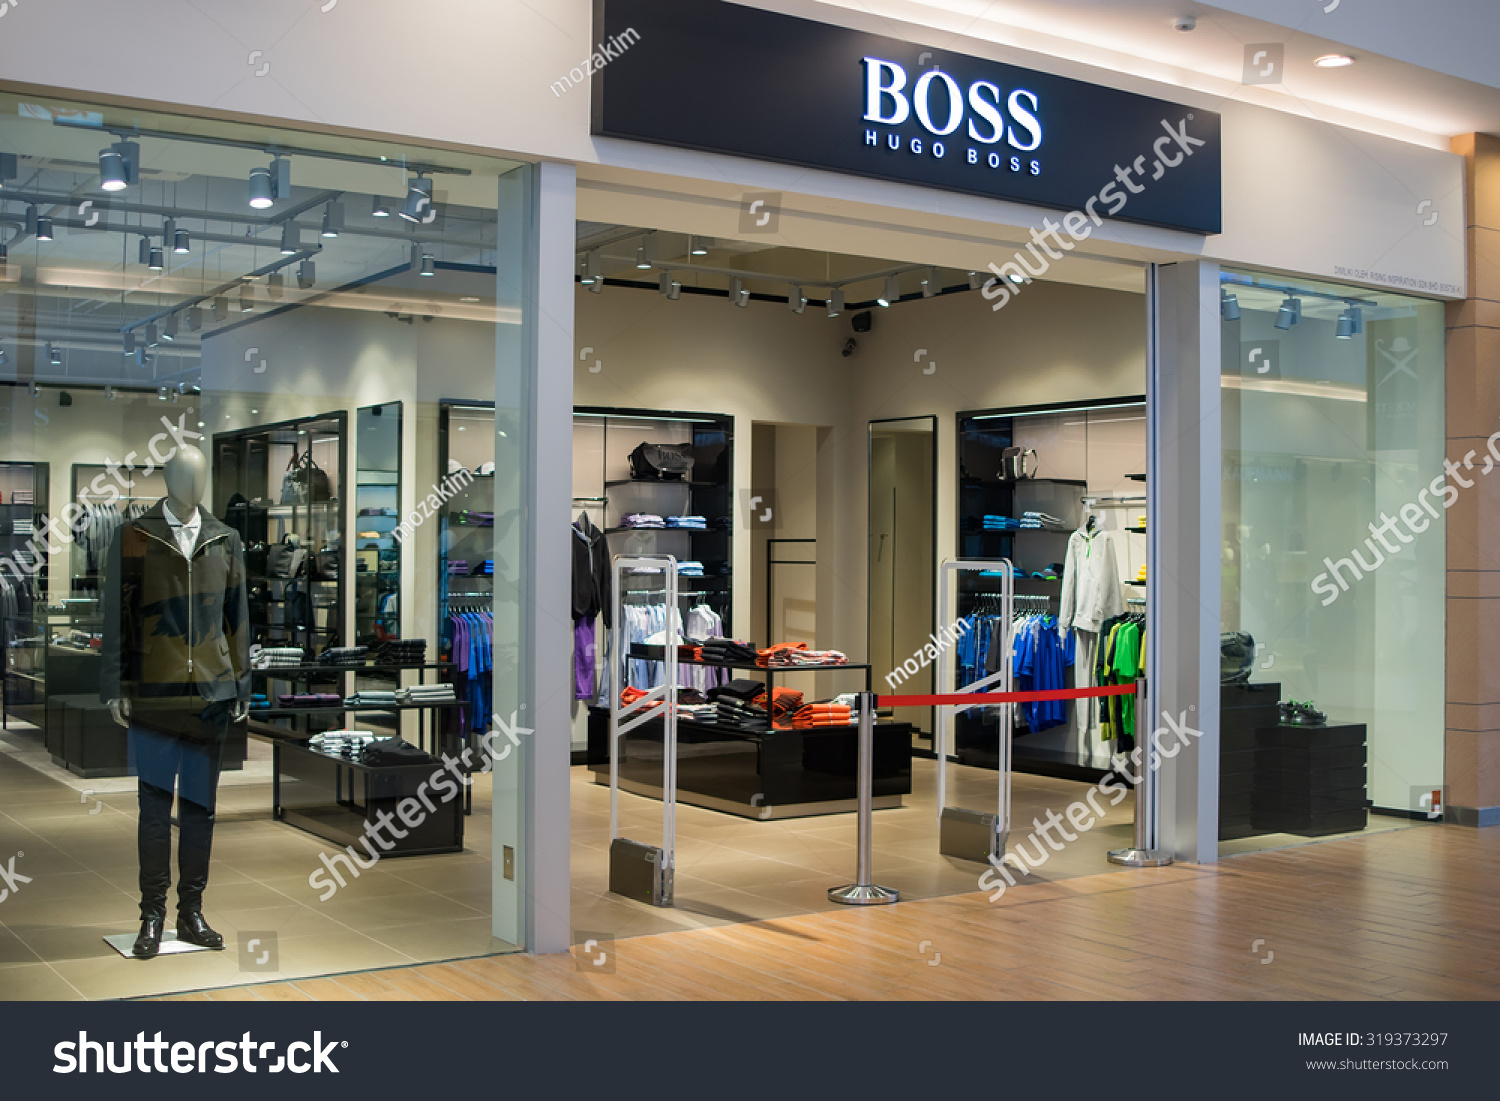 Sepang, Malaysia - September 20, 2015: Boss Hugo Boss Outlet Store At ...